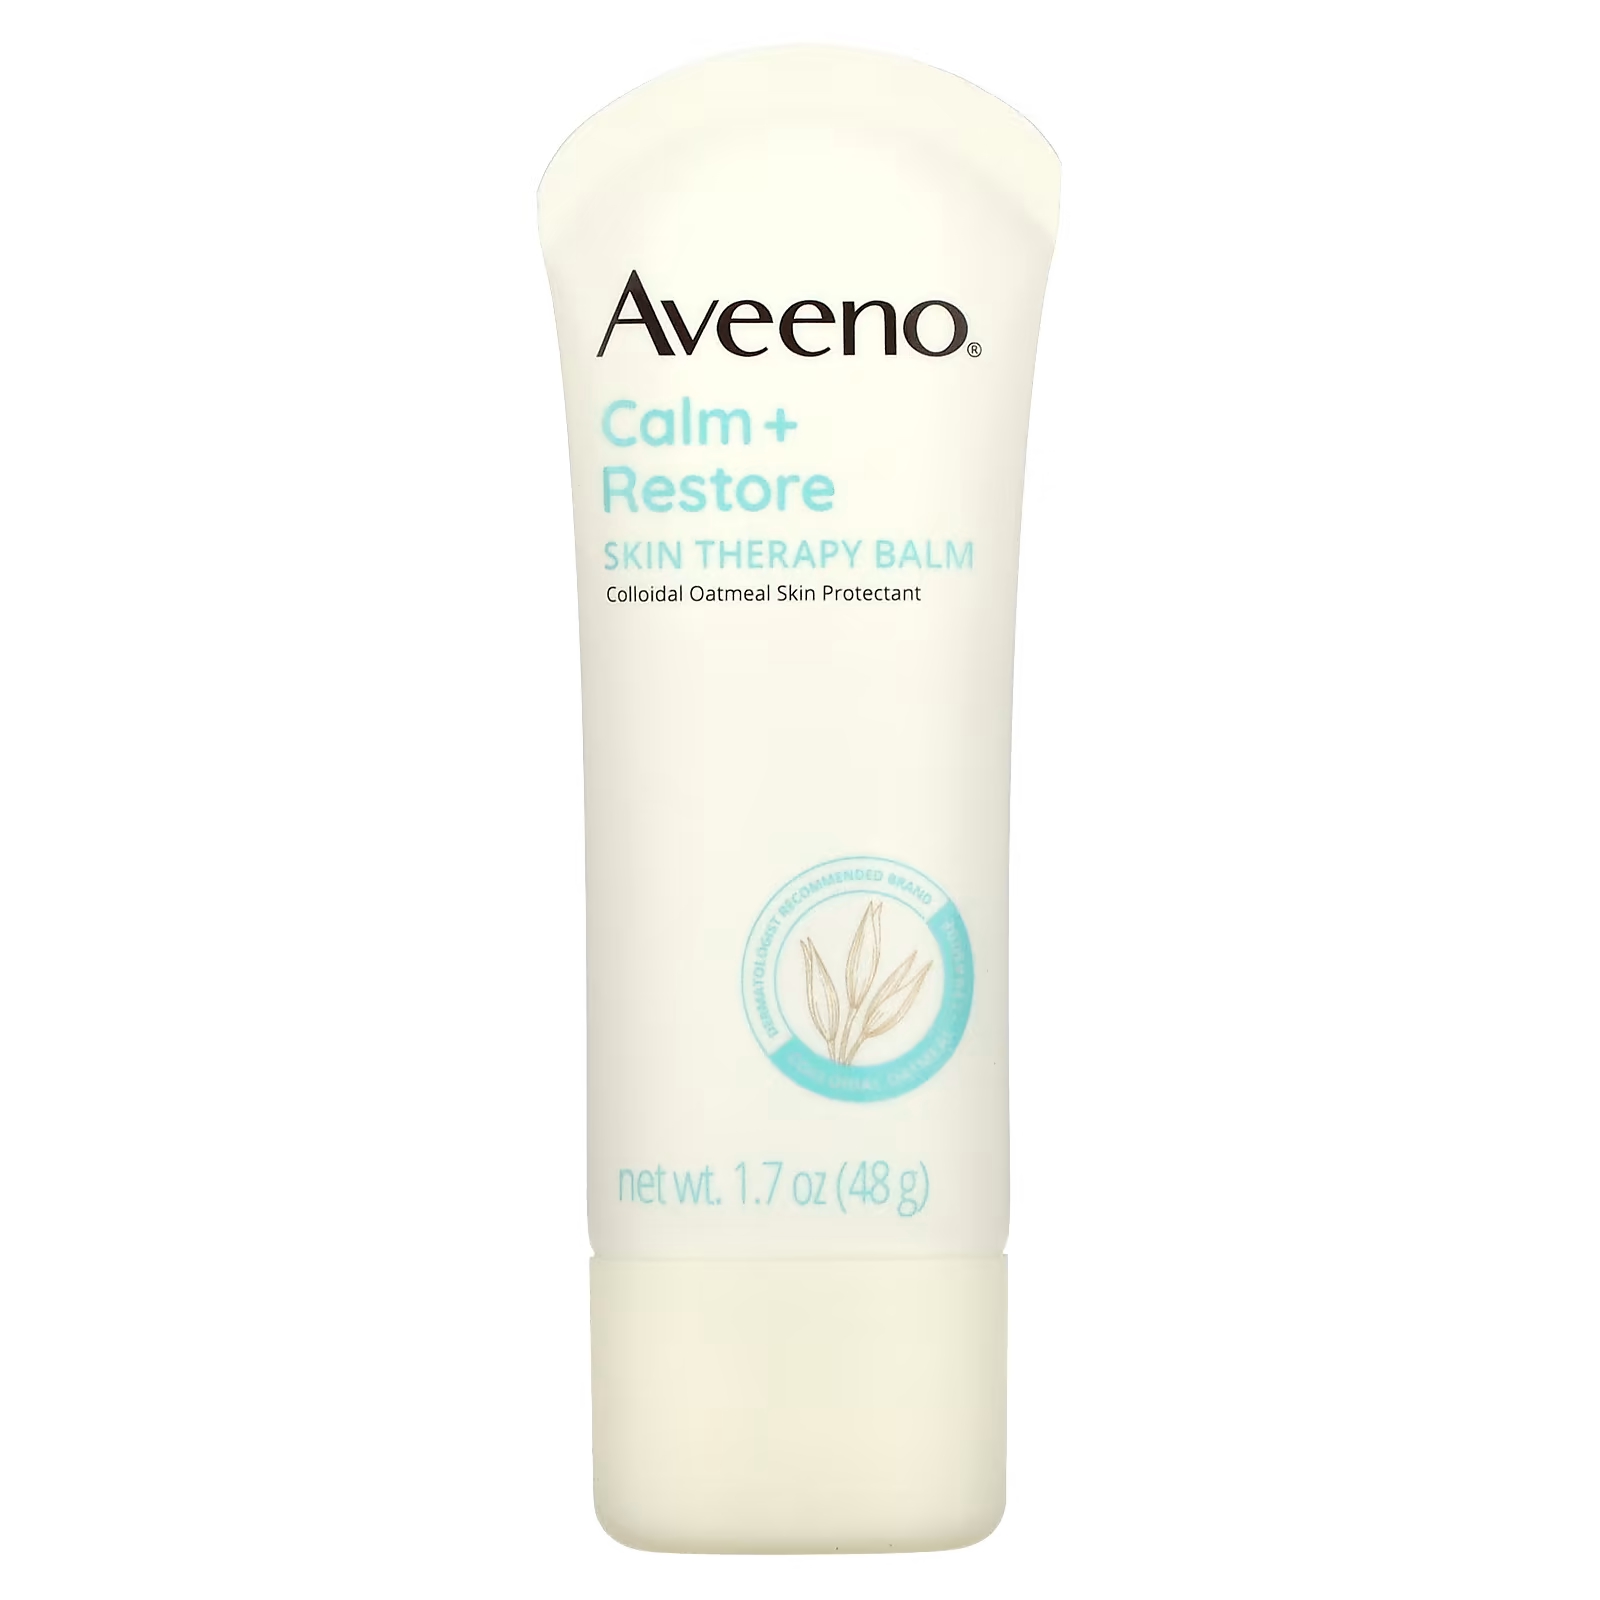 Бальзам Aveeno Calm + Restore для ухода за кожей, 48 г vanicream увлажняющий крем для сухой раздраженной или чувствительной кожи 453 г 1 фунт